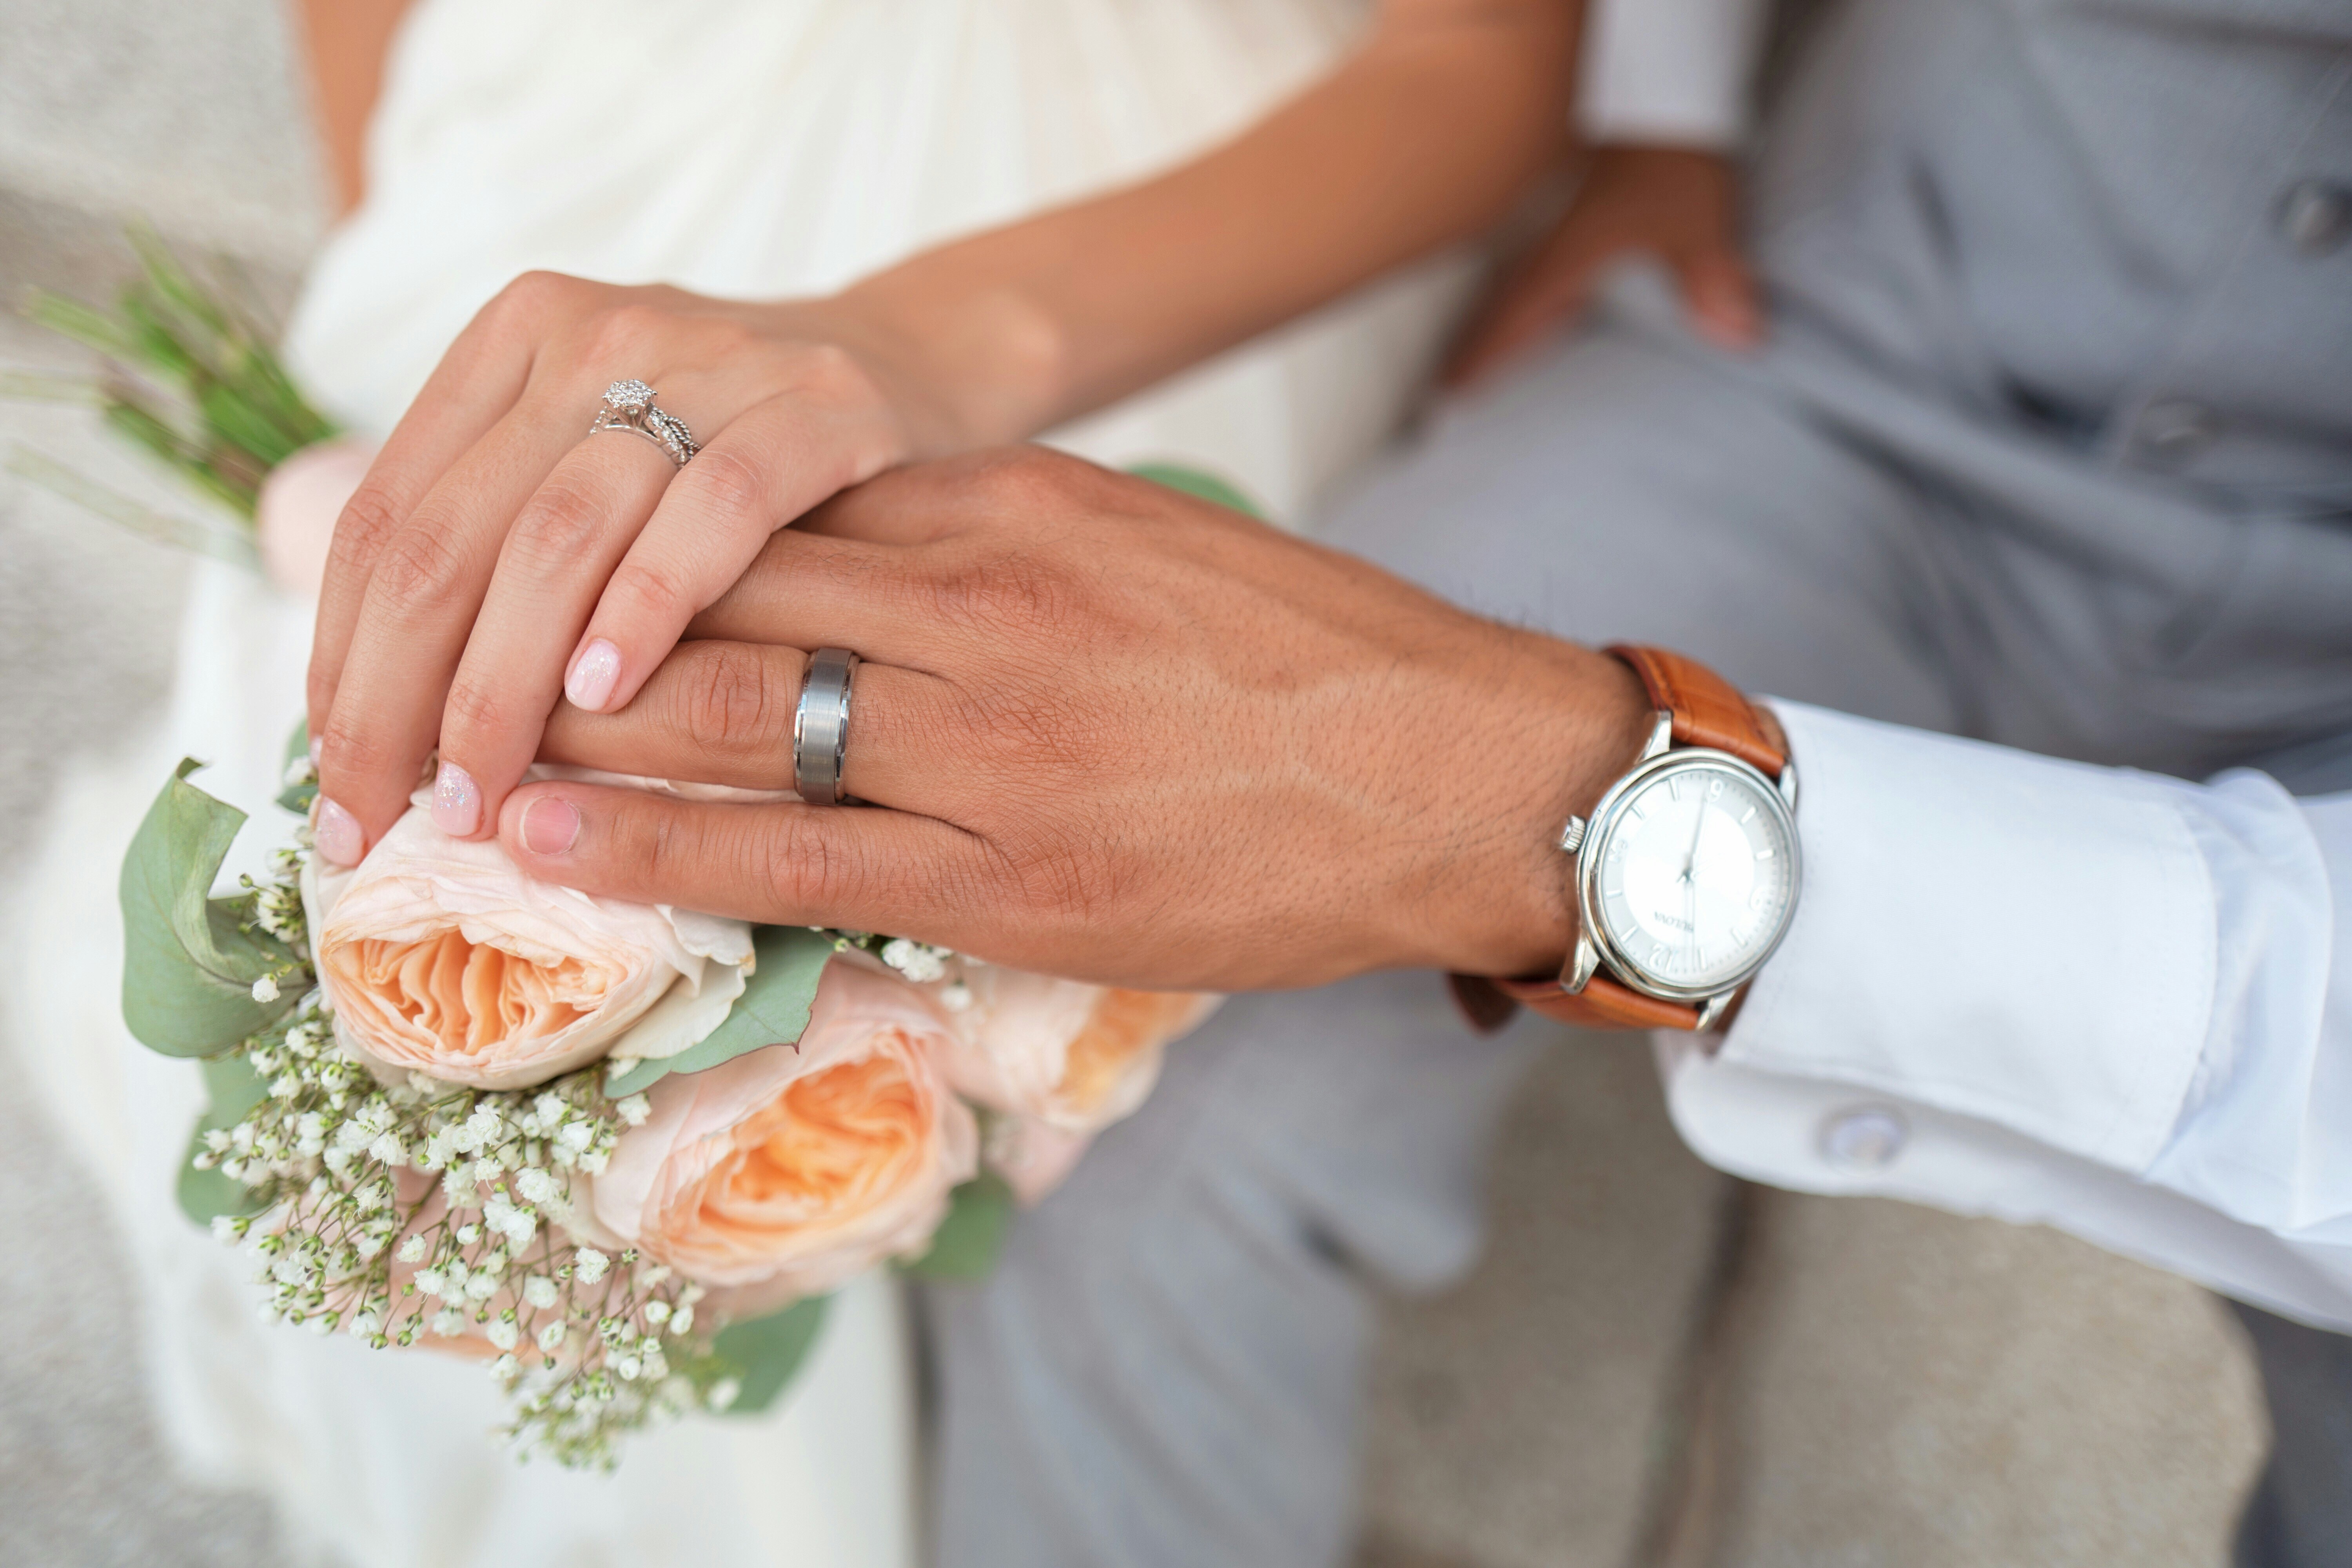 Цветы выйти замуж. Свадебные кольца. Обручальные кольца на руках. Кольца на свадьбу обручальные. Обручальные кольца на руках жениха и невесты.